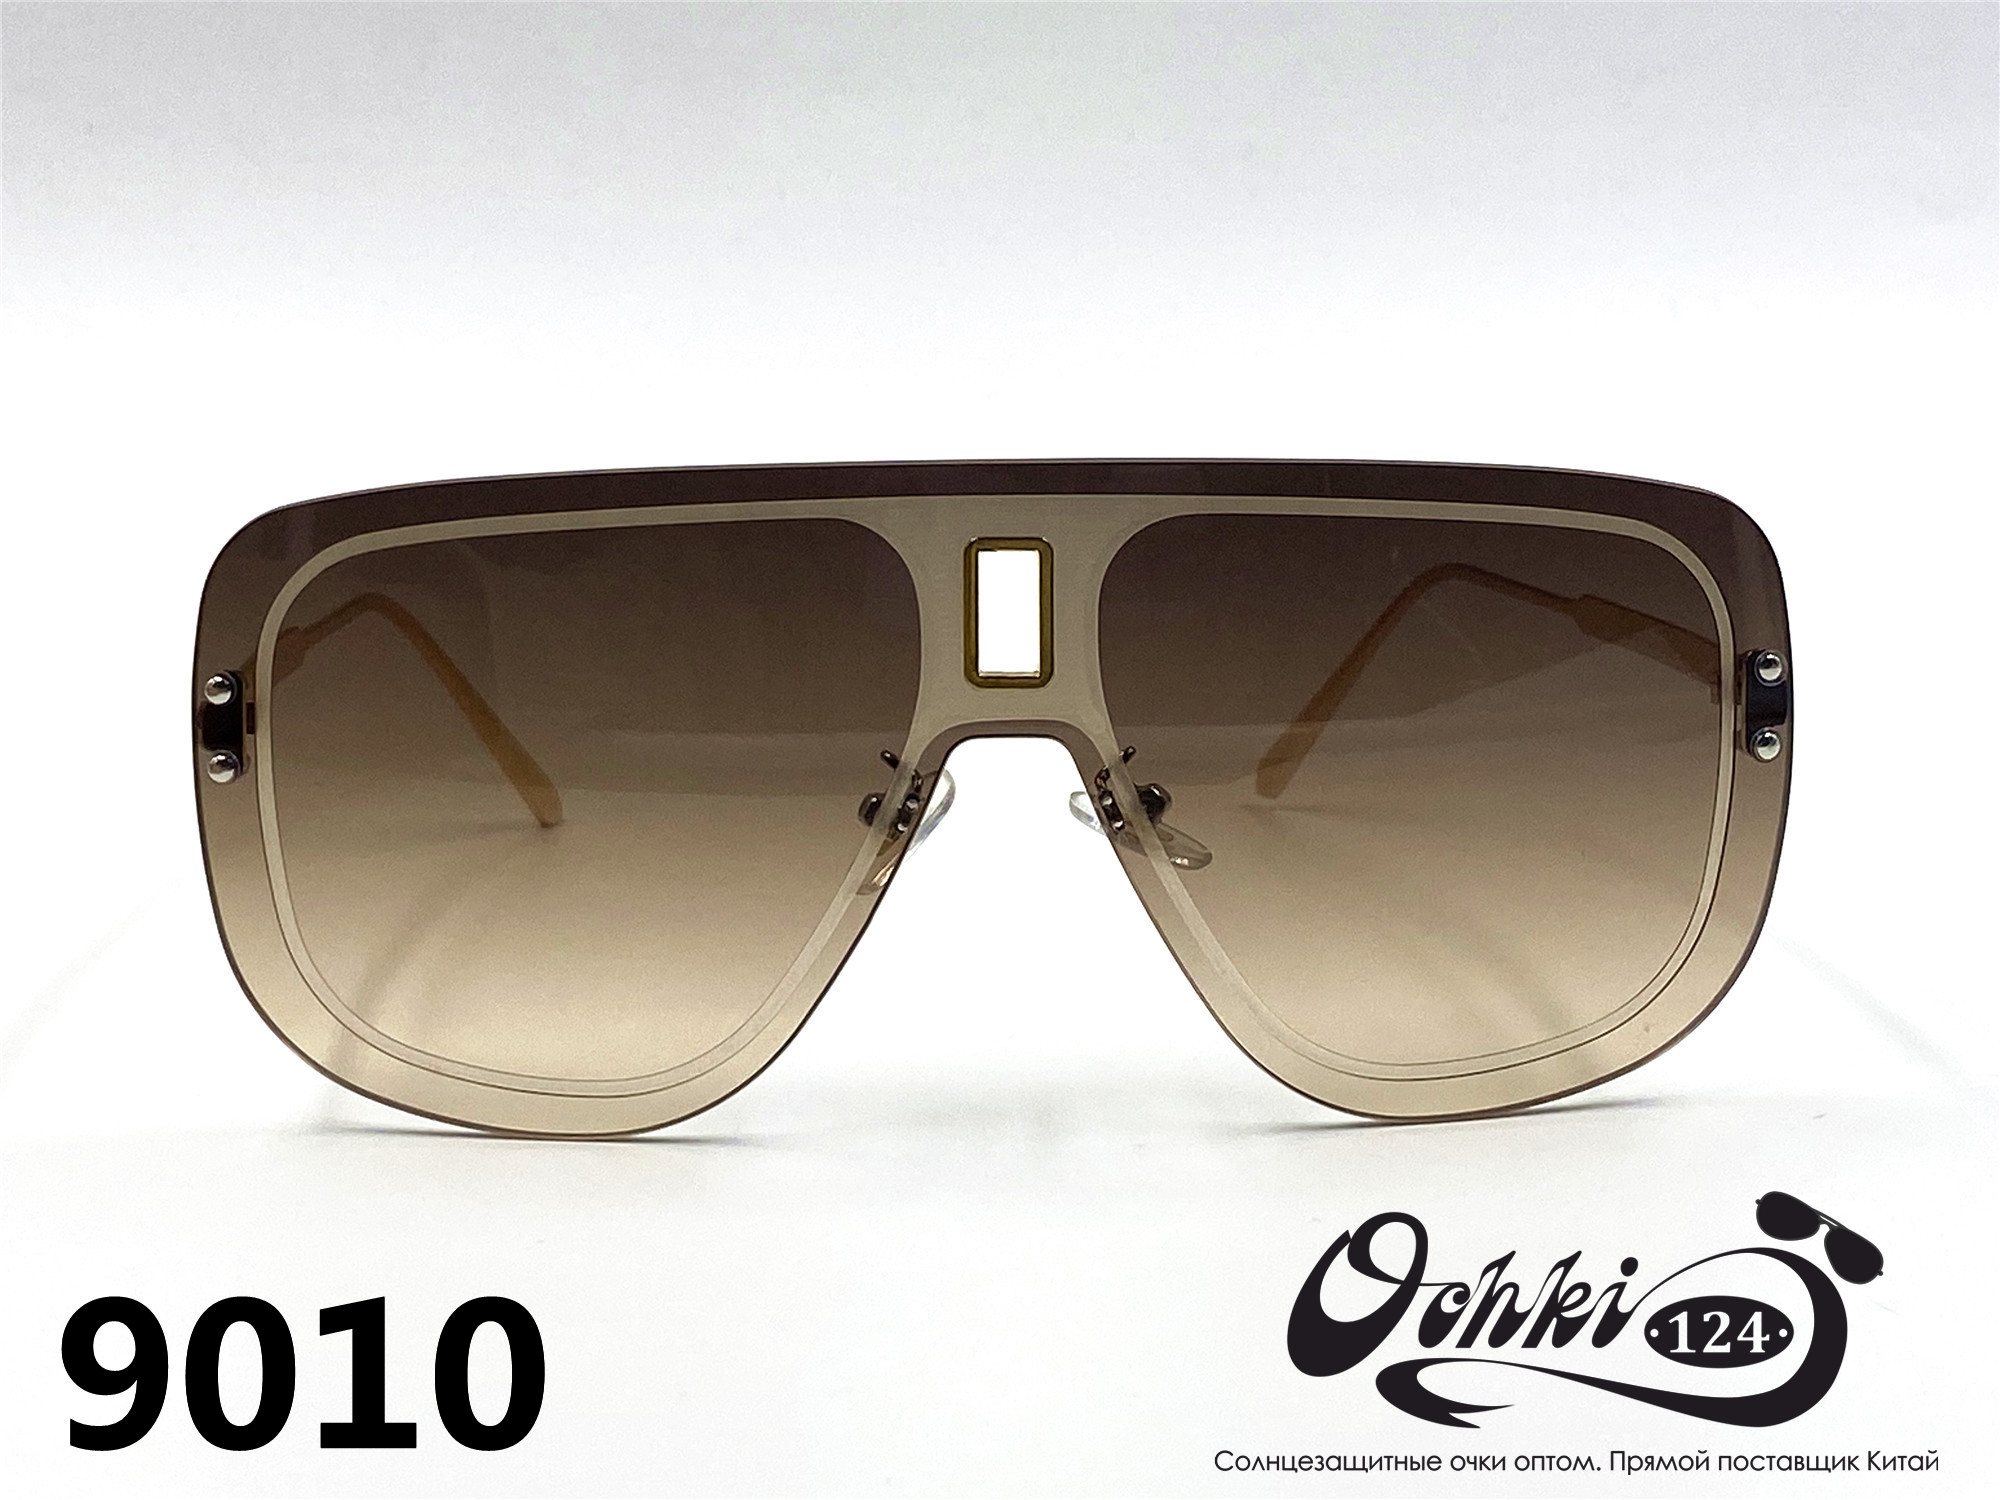  Солнцезащитные очки картинка 2022 Женские Пластик Авиаторы Caipai 9010-2 